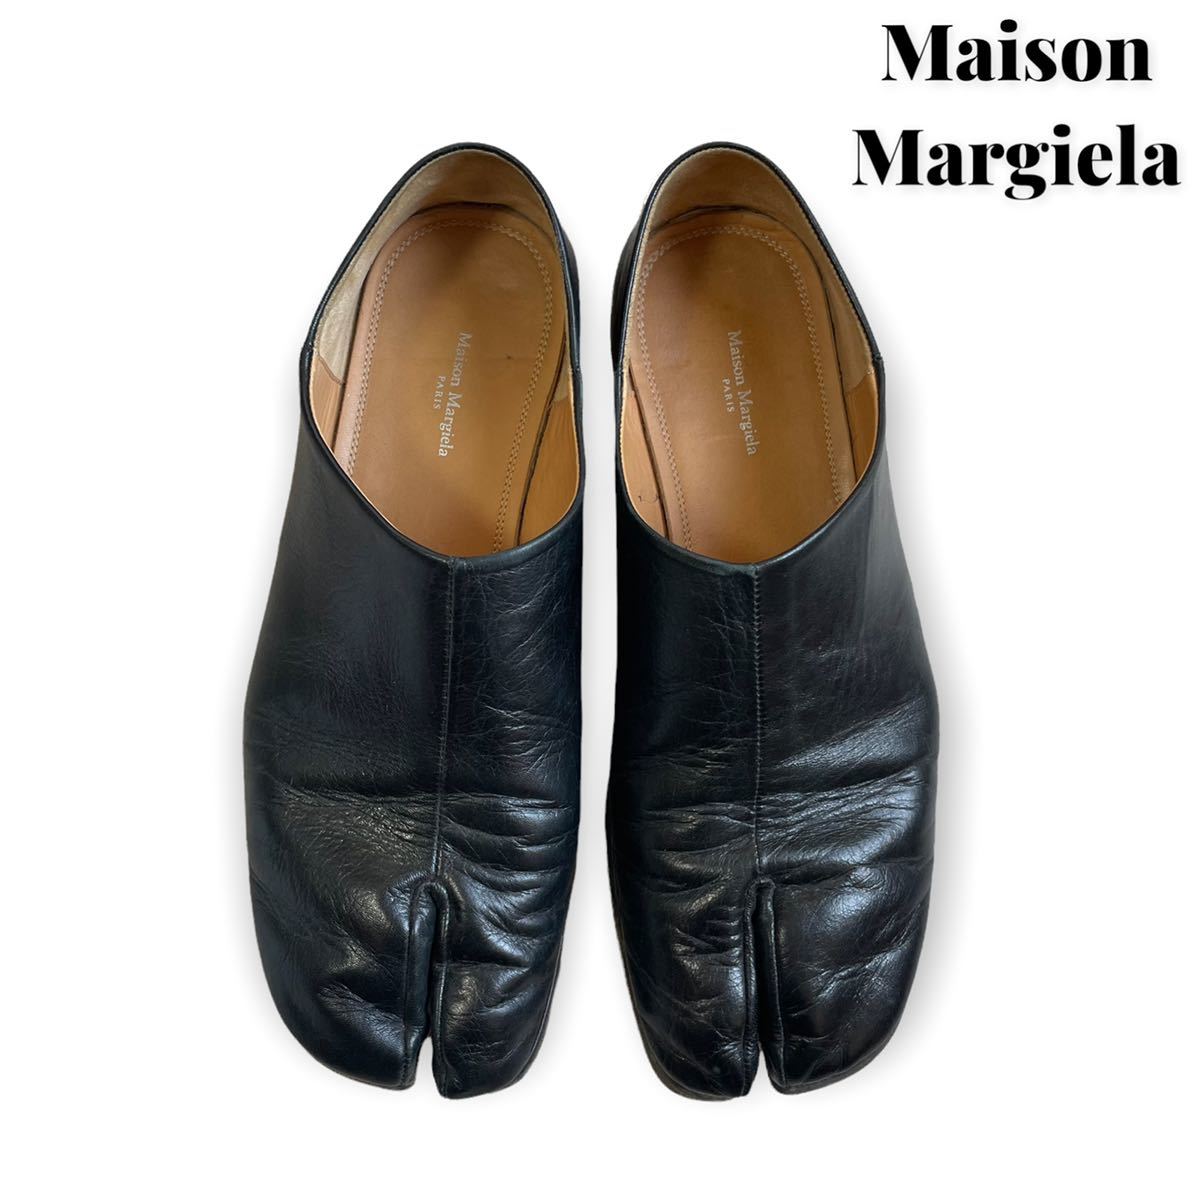 Maison Margiela メゾン マルジェラ 足袋 タビ スリッポン バブーシュ ブラック レザー 41 -  impactaselantes.com.br